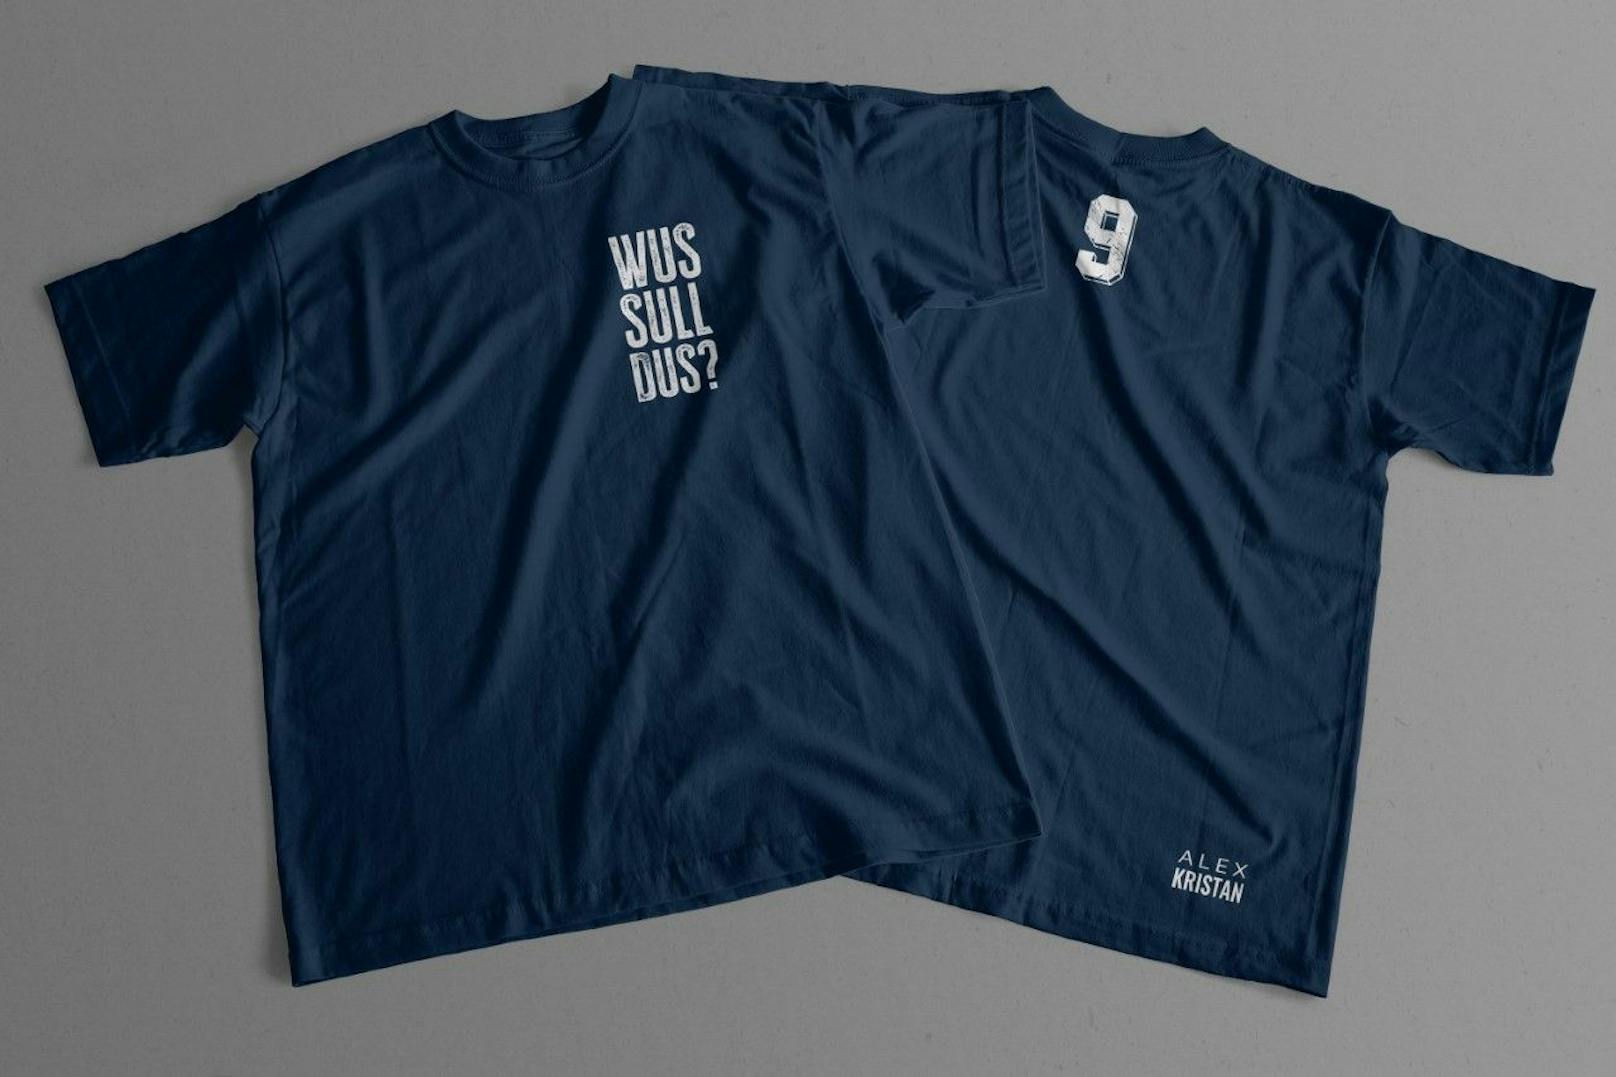 Die T-Shirts mit dem Spruch "Wus sull dus?" sind bis Jänner vergriffen. Mit <em>"Heute"</em> kannst du ein signiertes T-Shirt gewinnen.